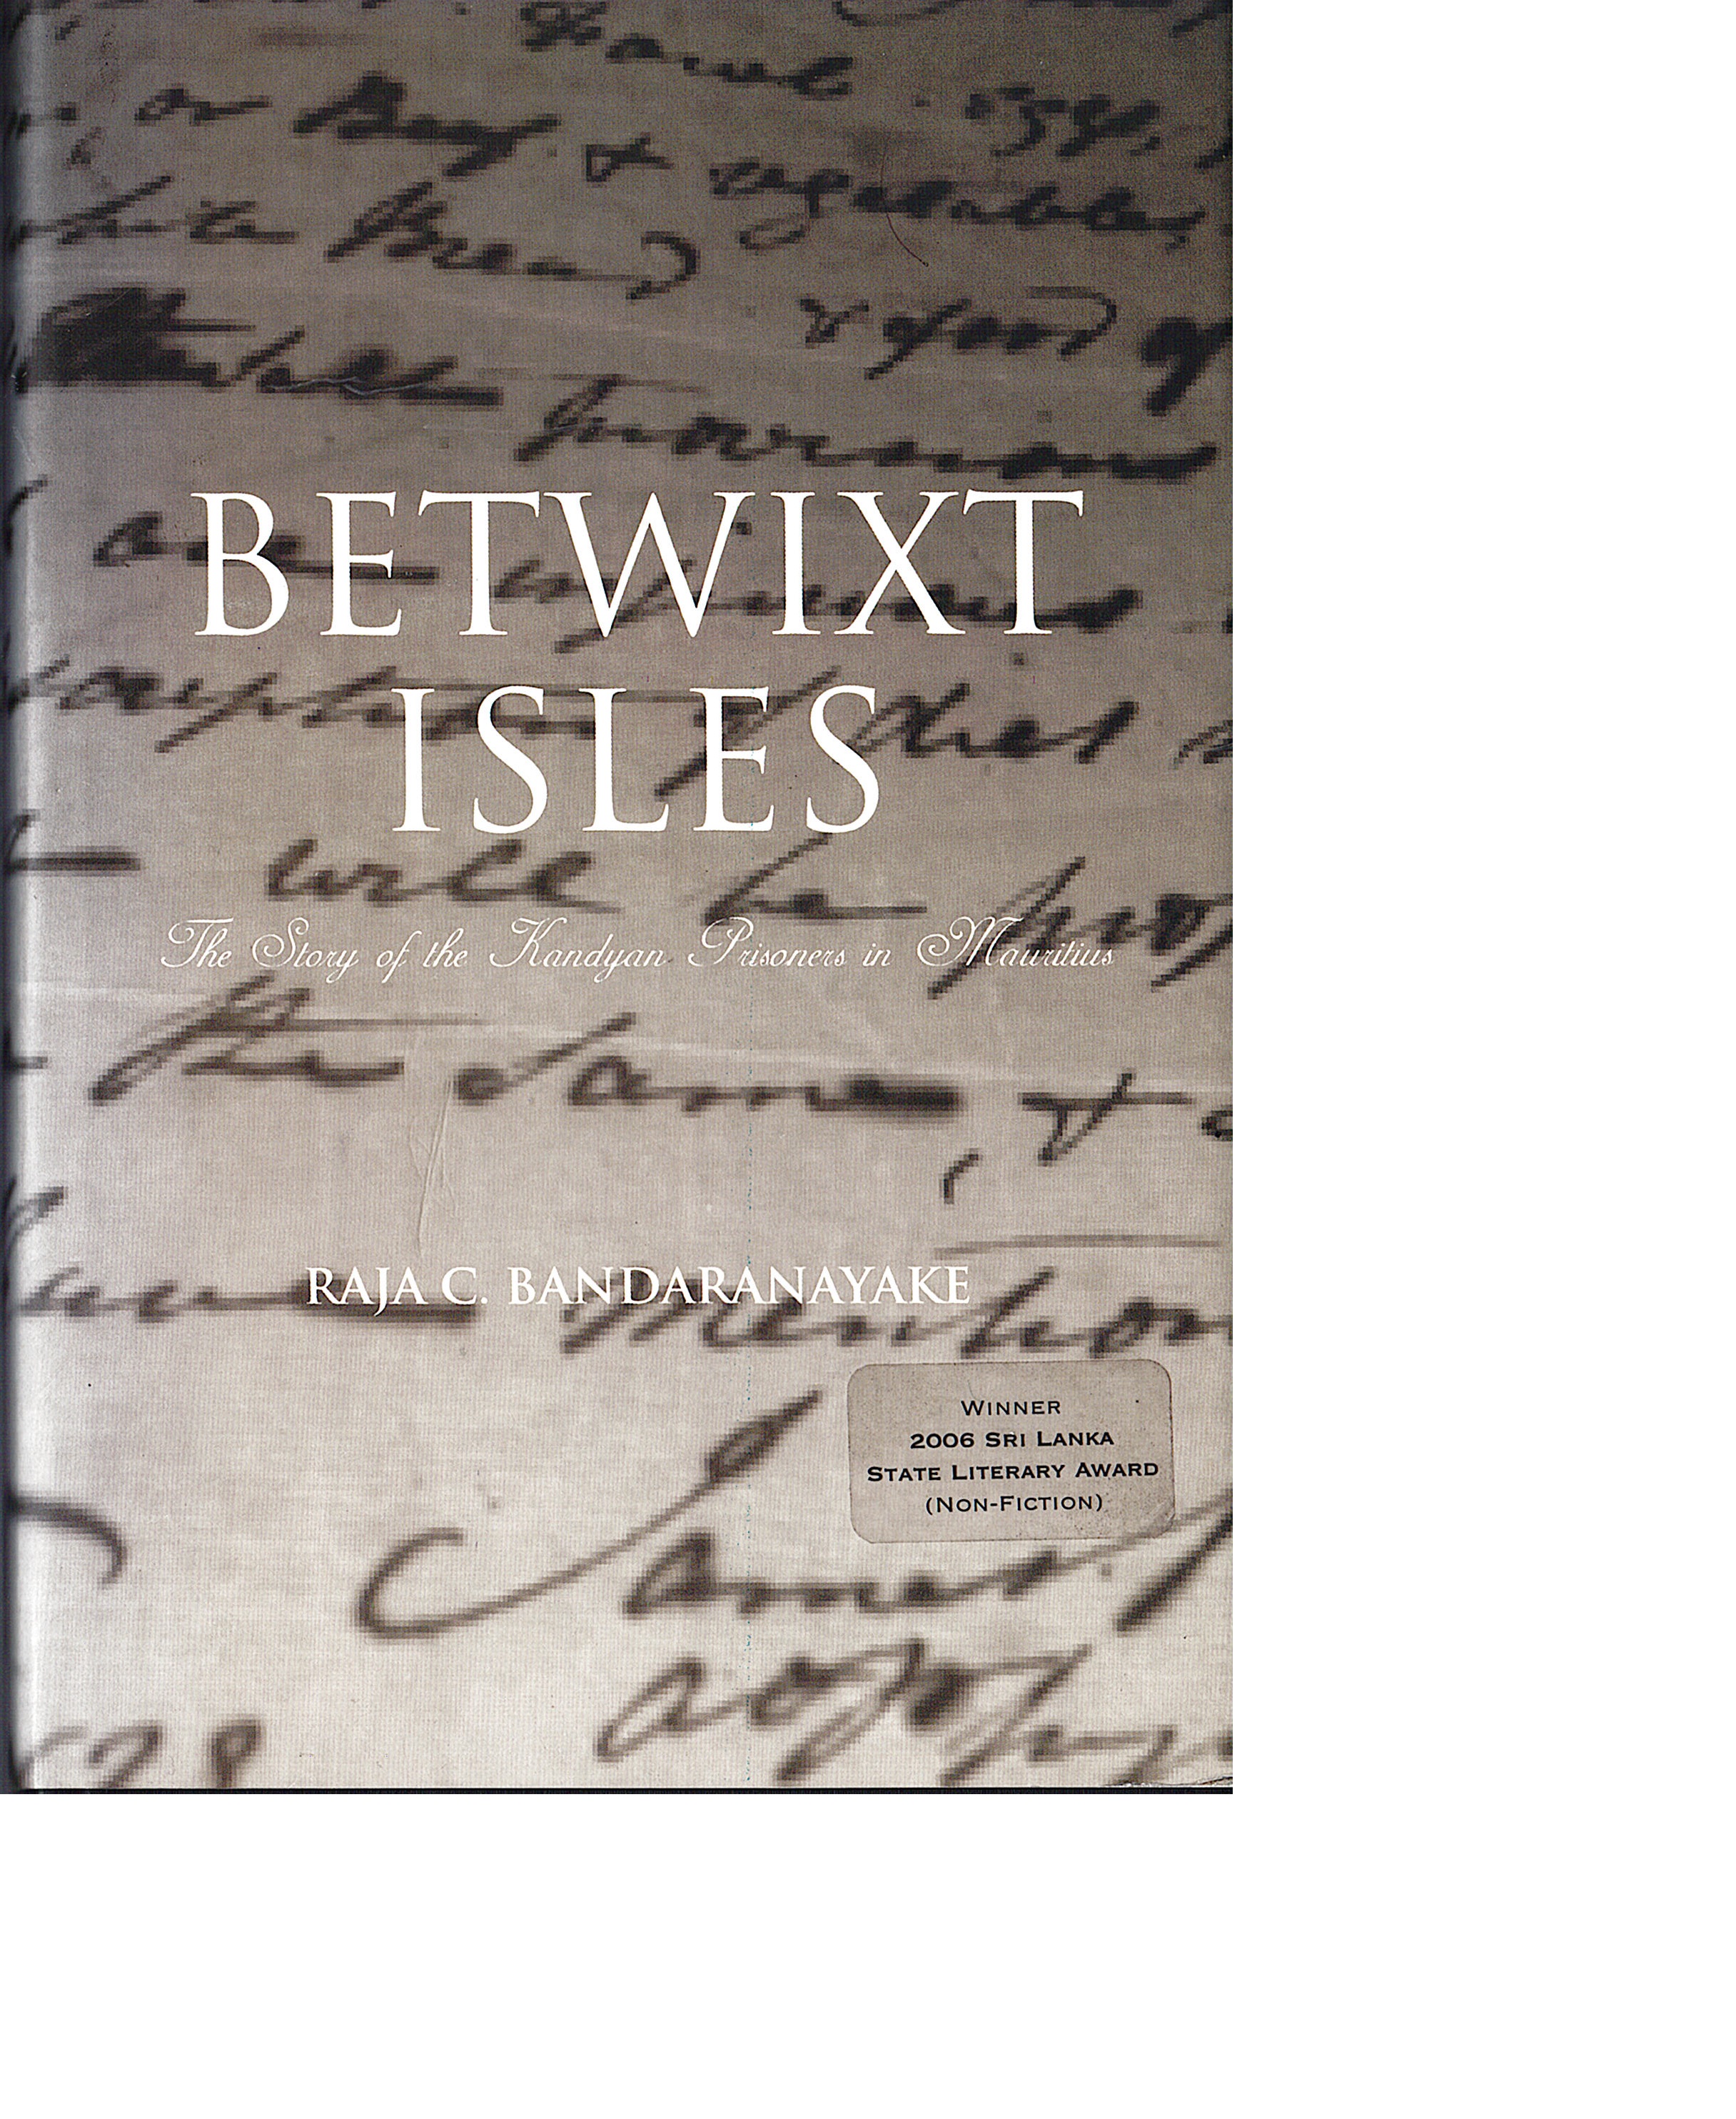 Betwixt Isles